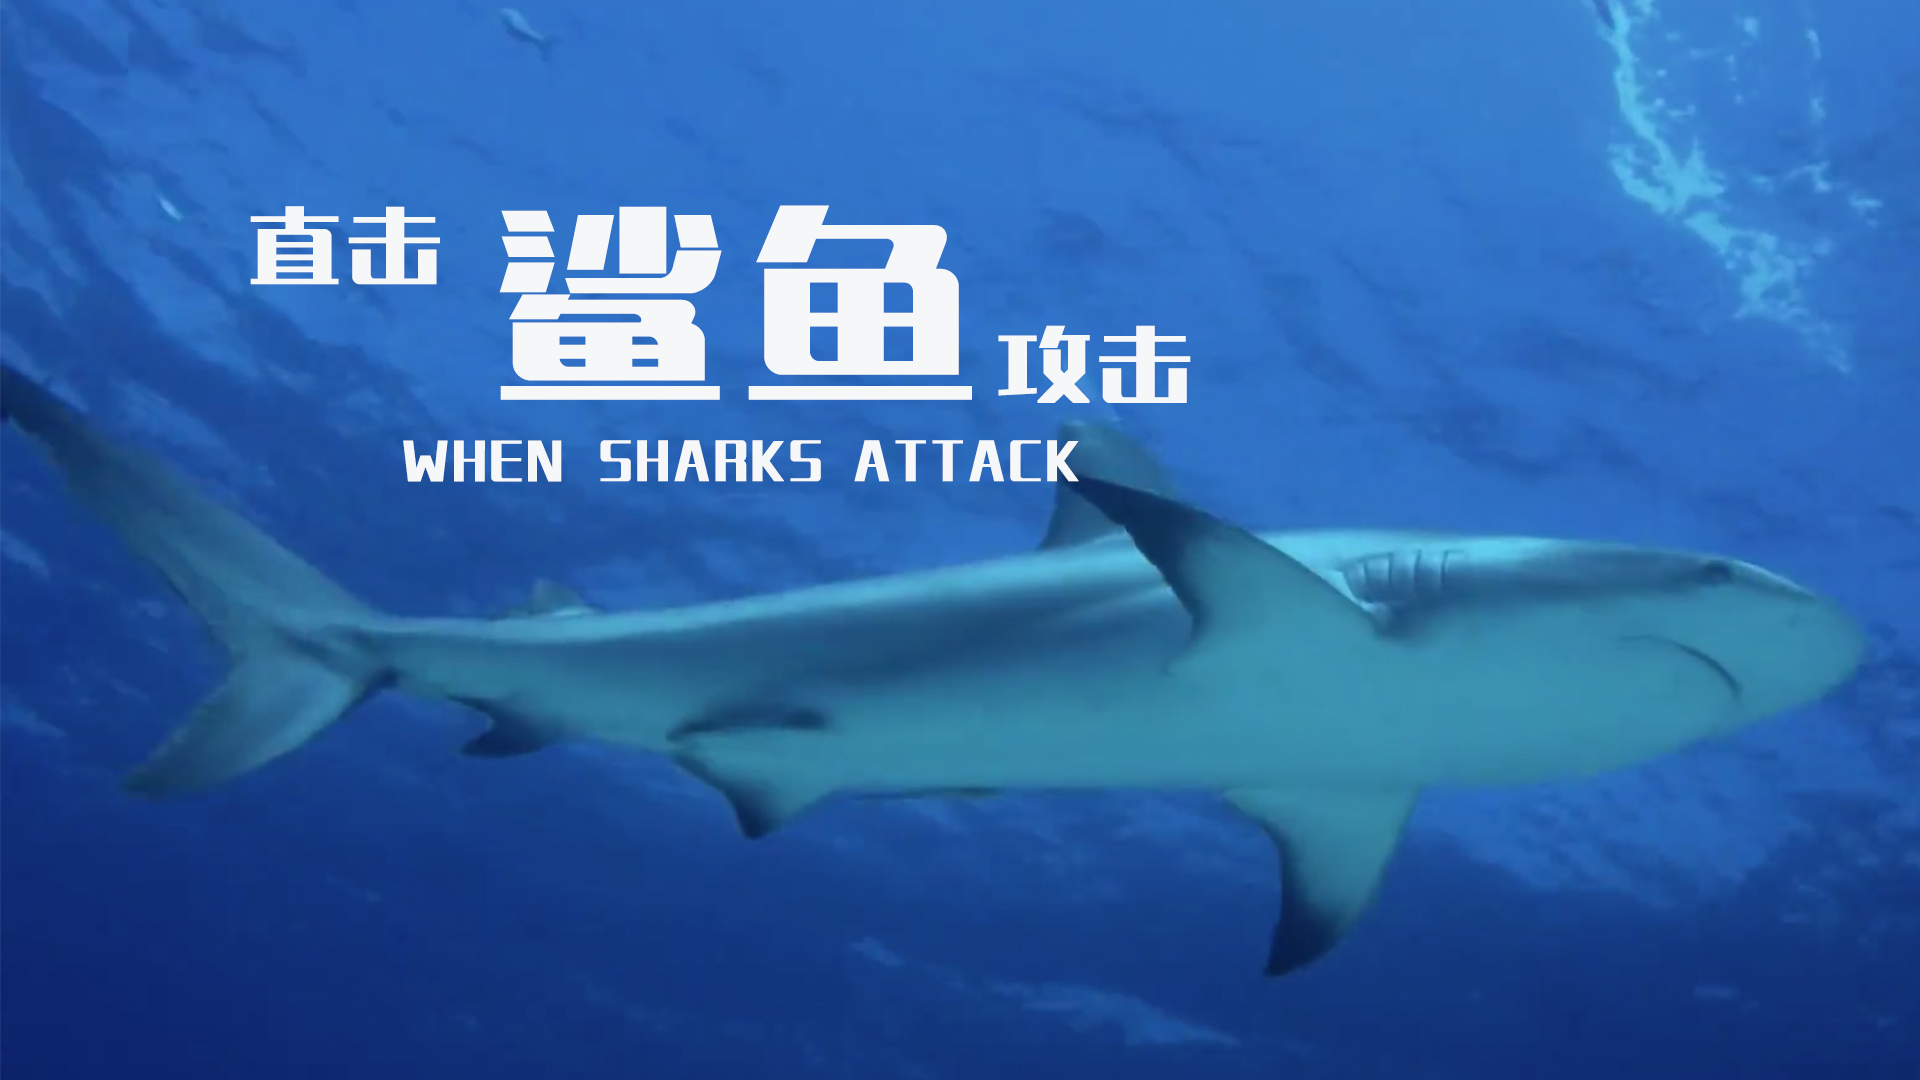 【纪录片】直击鲨鱼攻击 第五季 02鲨鱼咬人之都